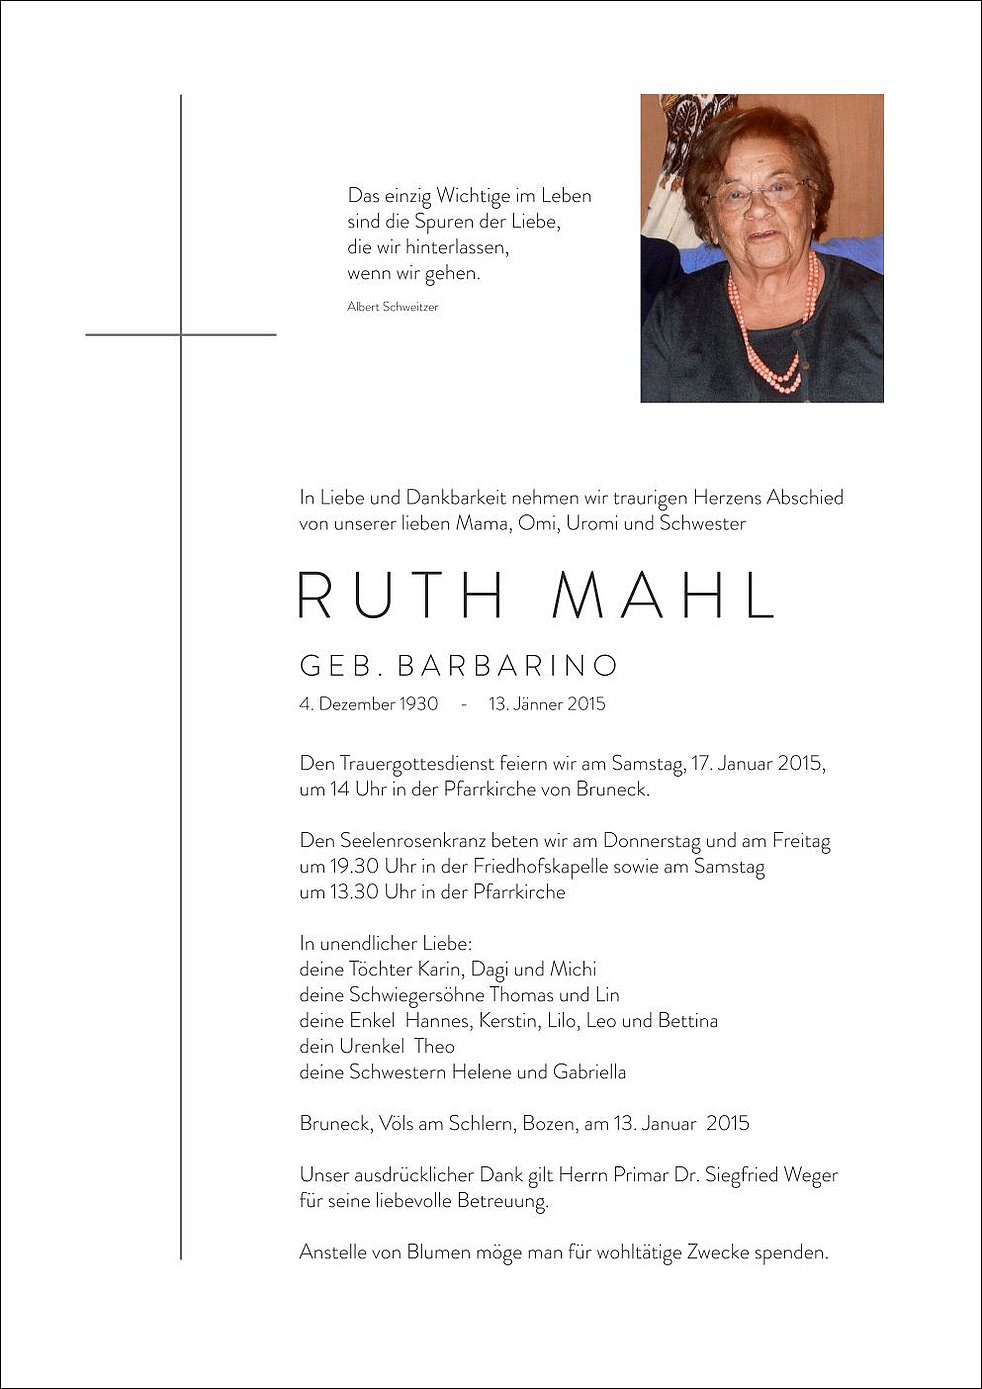 Ruth Mahl Aus Bruneck Trauerhilfeit Das Südtiroler Gedenkportal 